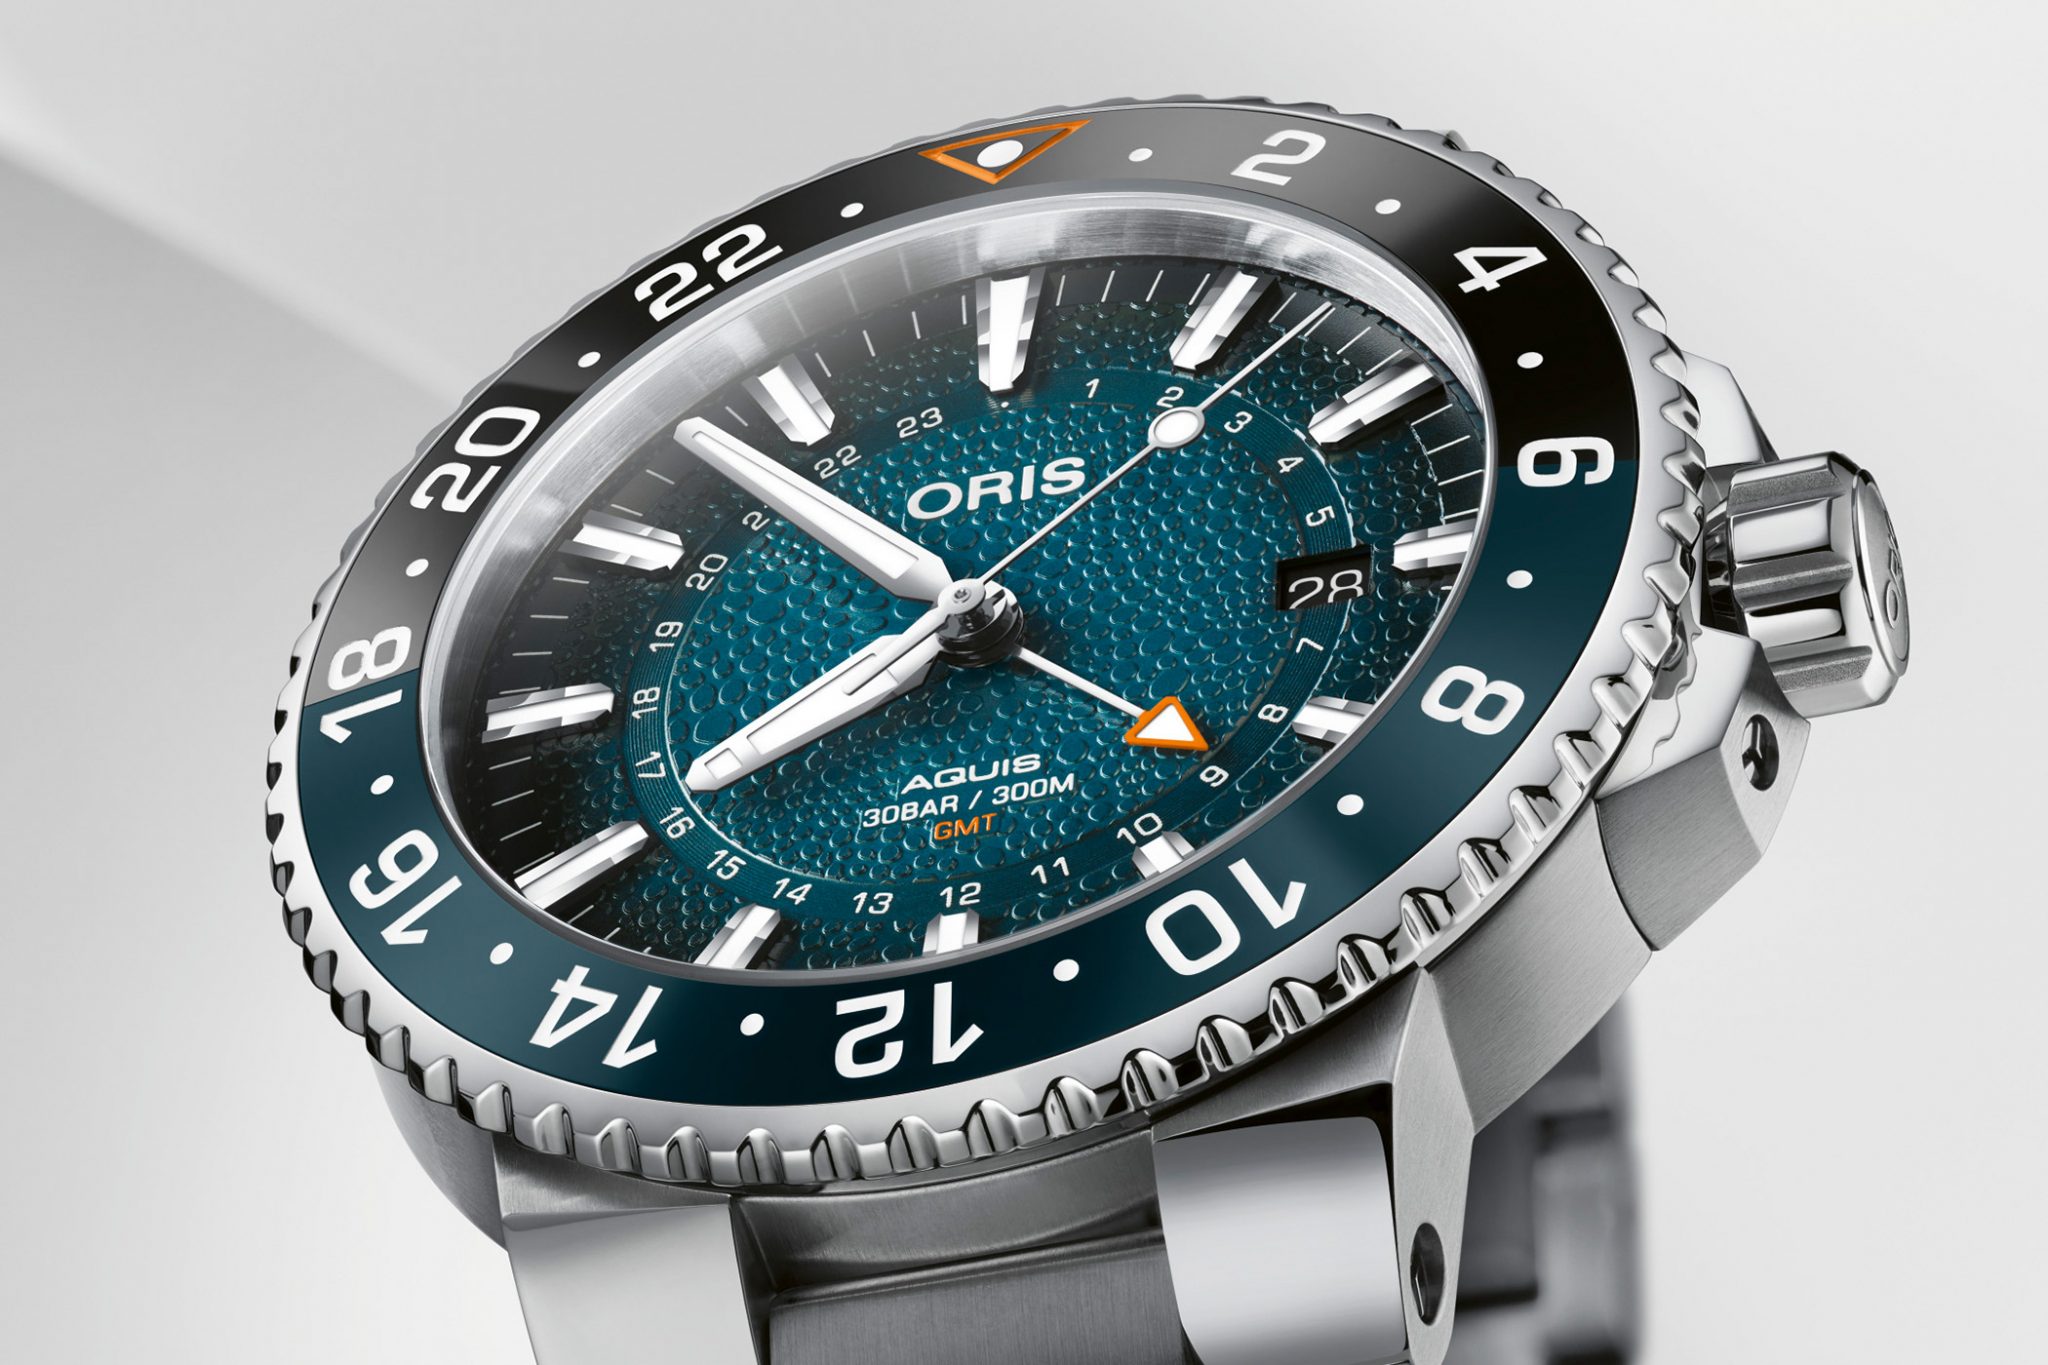 Oris-Aquis-GMT-Date-Whale-Shark-Limited-Edition-01-798-7754-4175-Set-Zifferblatt